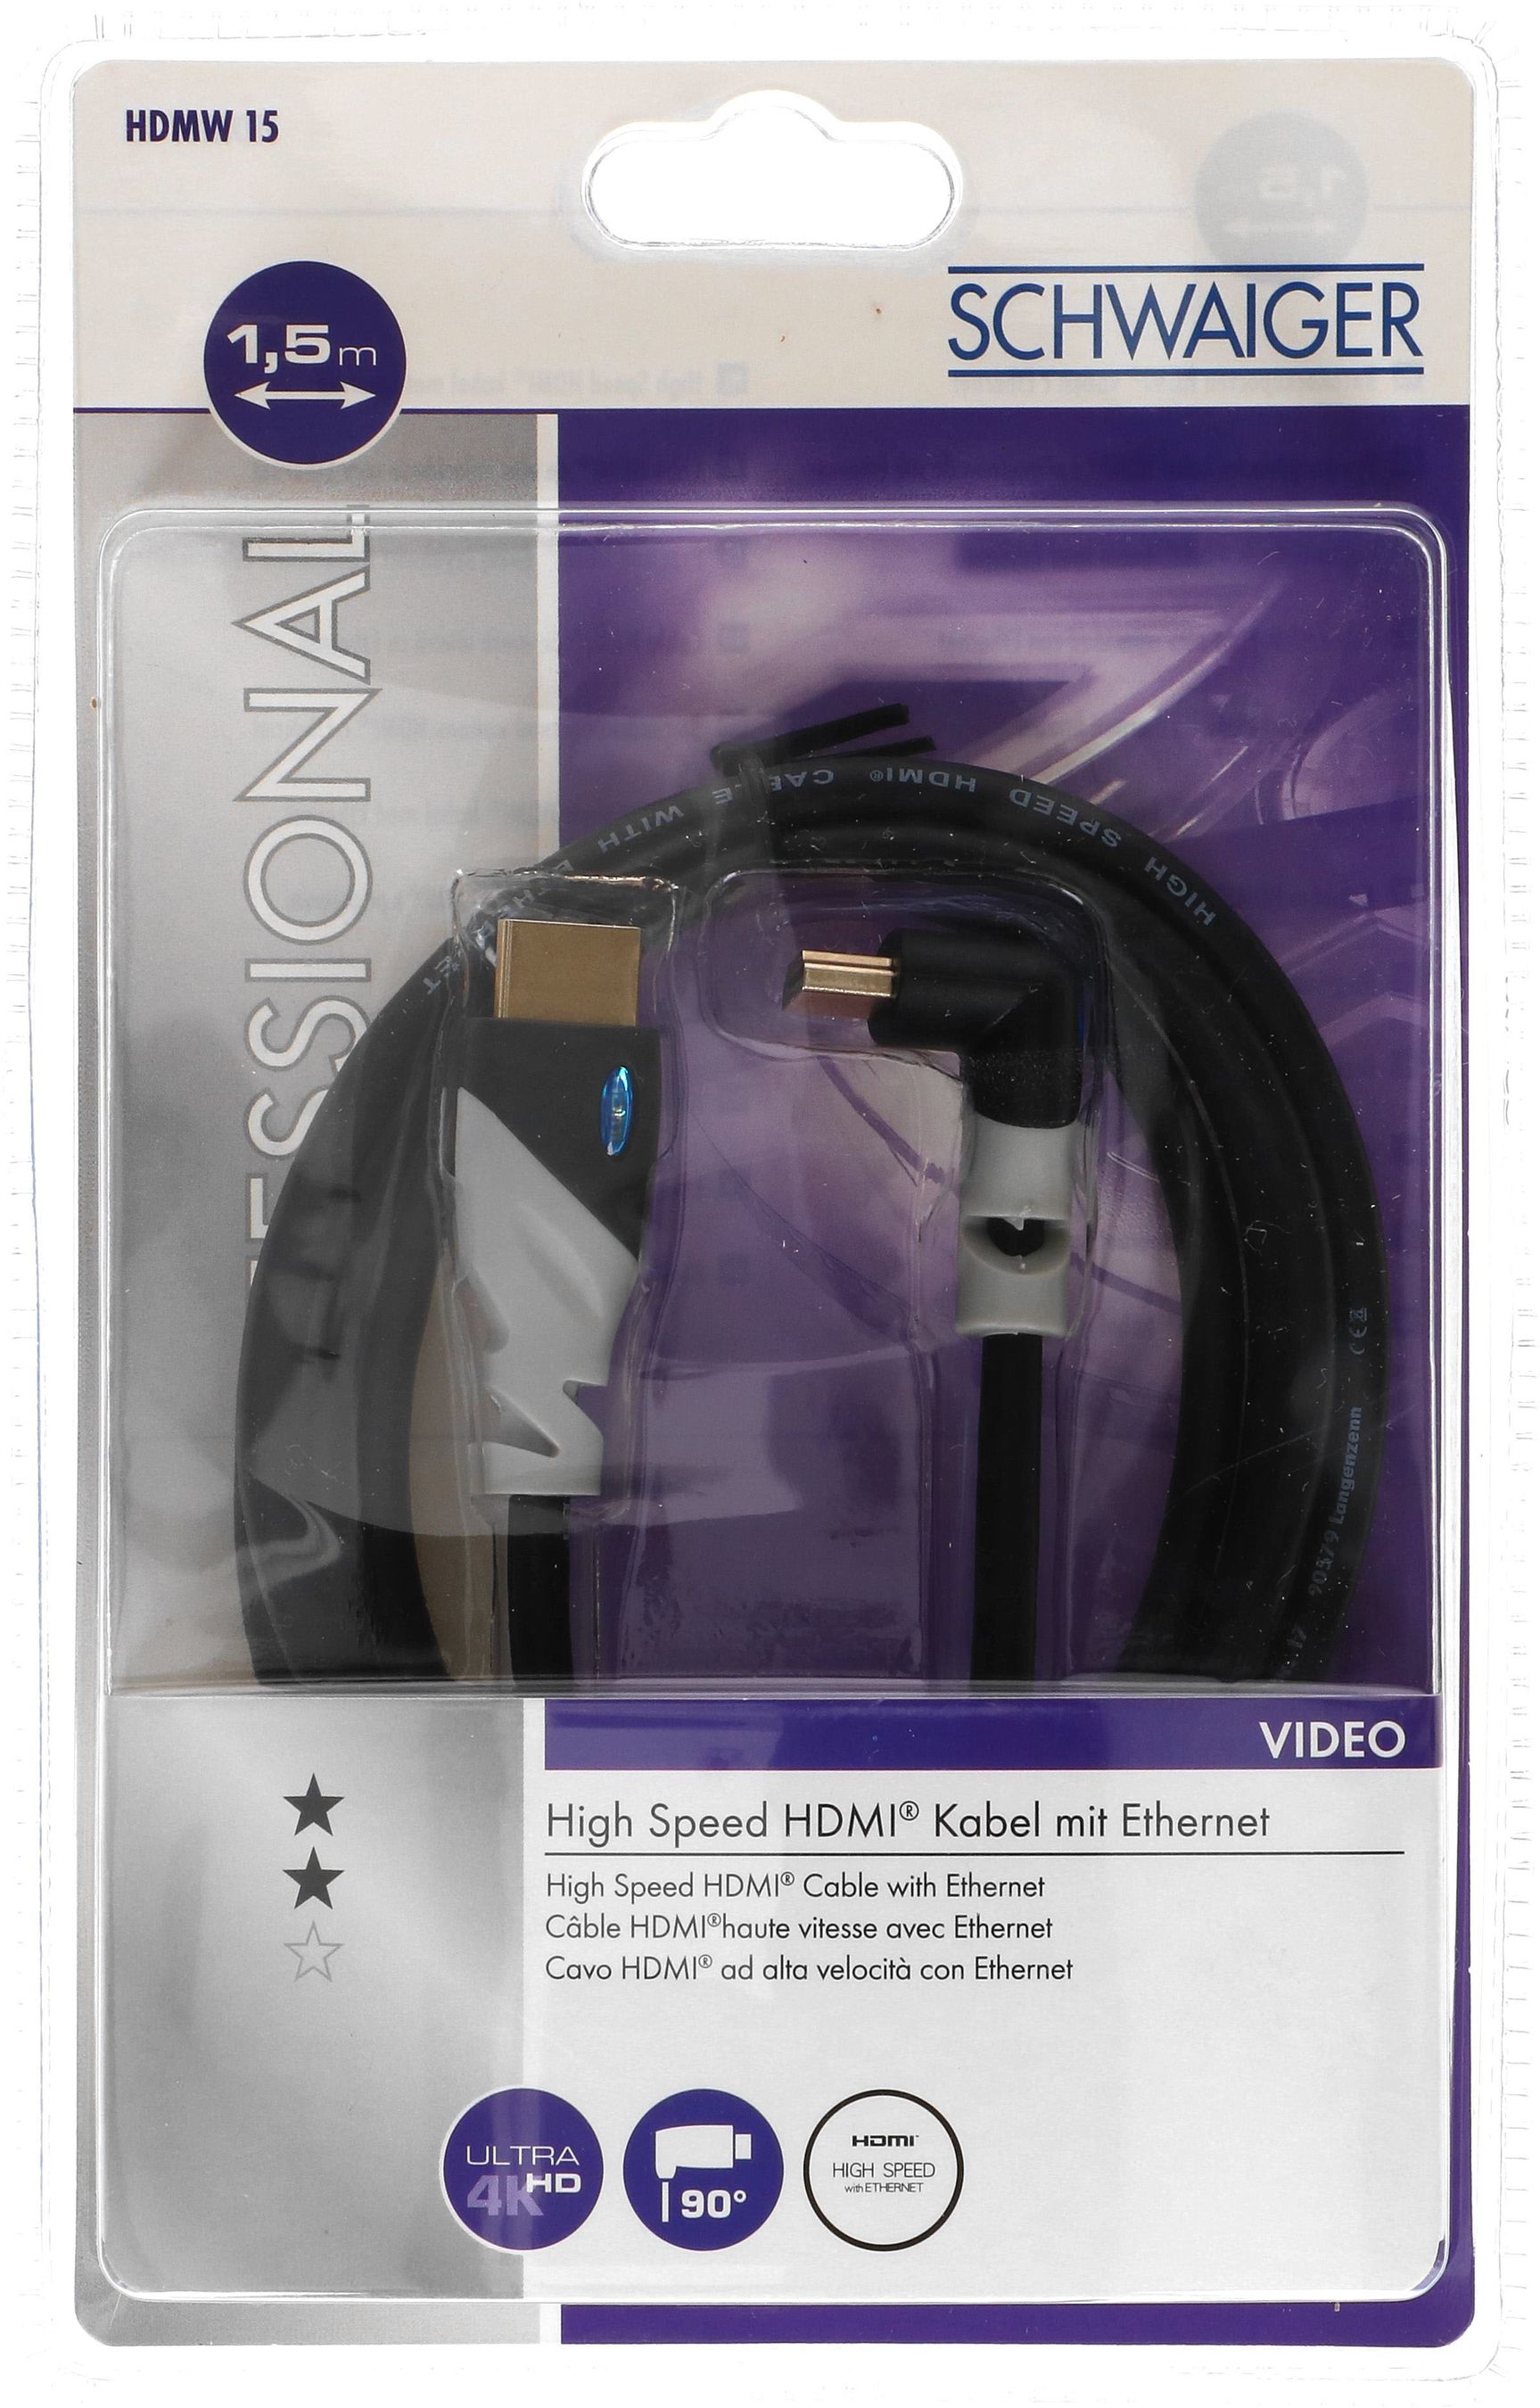 HDMI Anschlußkabel 1,5m schwarz/grau